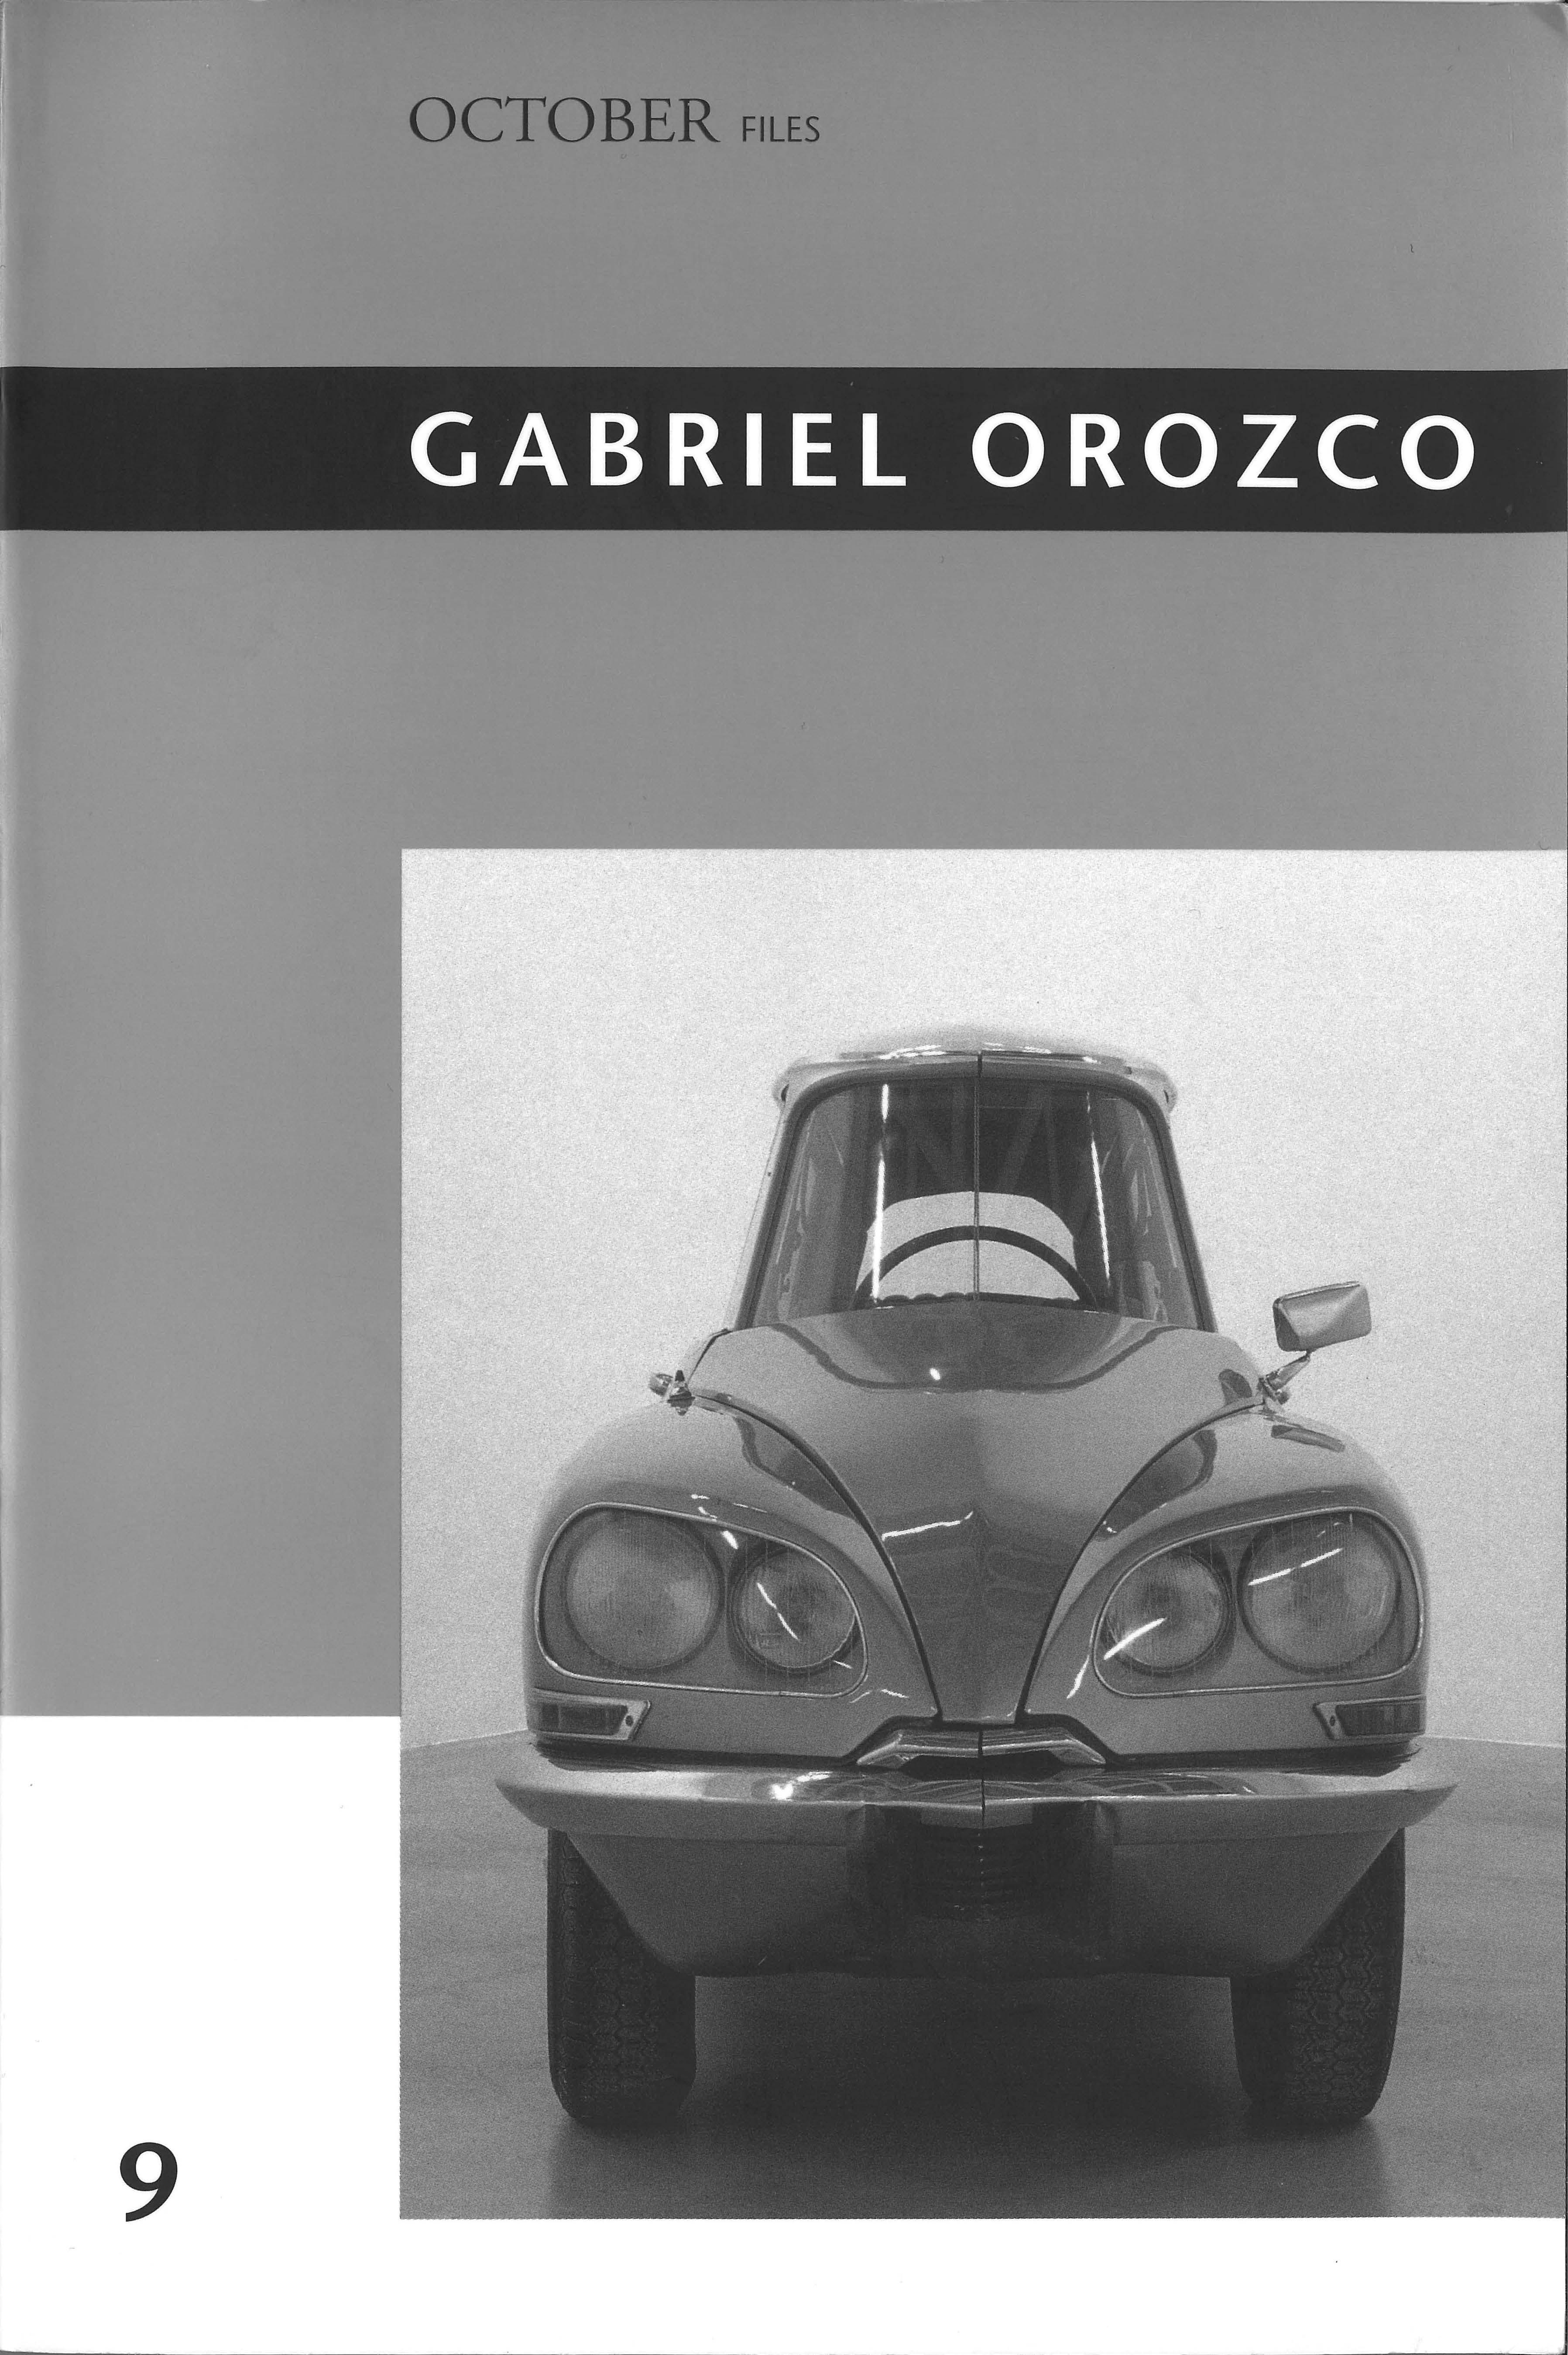 Lo-res image of Gabriel Orozco's works